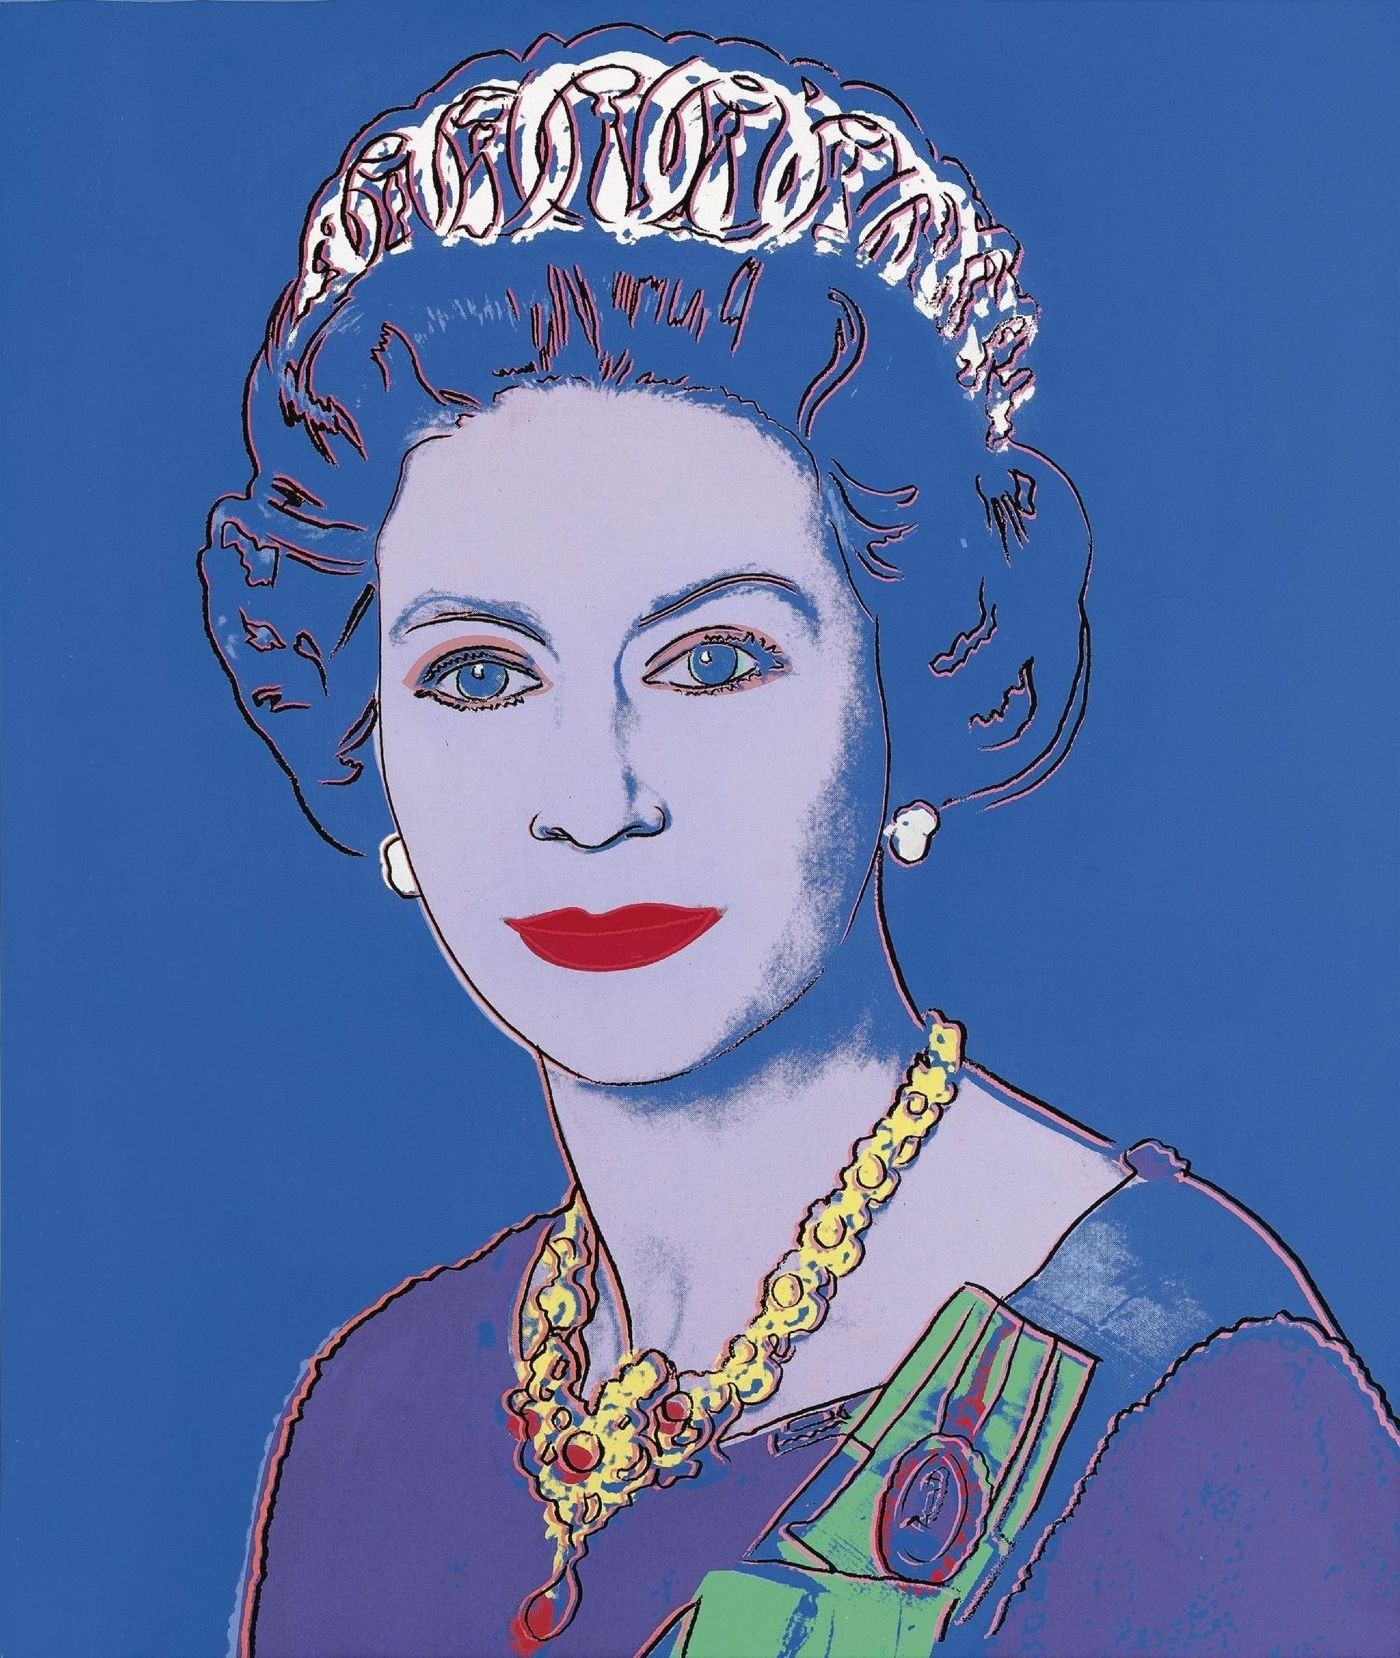 Retrato raro da rainha Elizabeth feito por Andy Warhol ganhará exposição (Foto: Divulgação/Sotheby's)